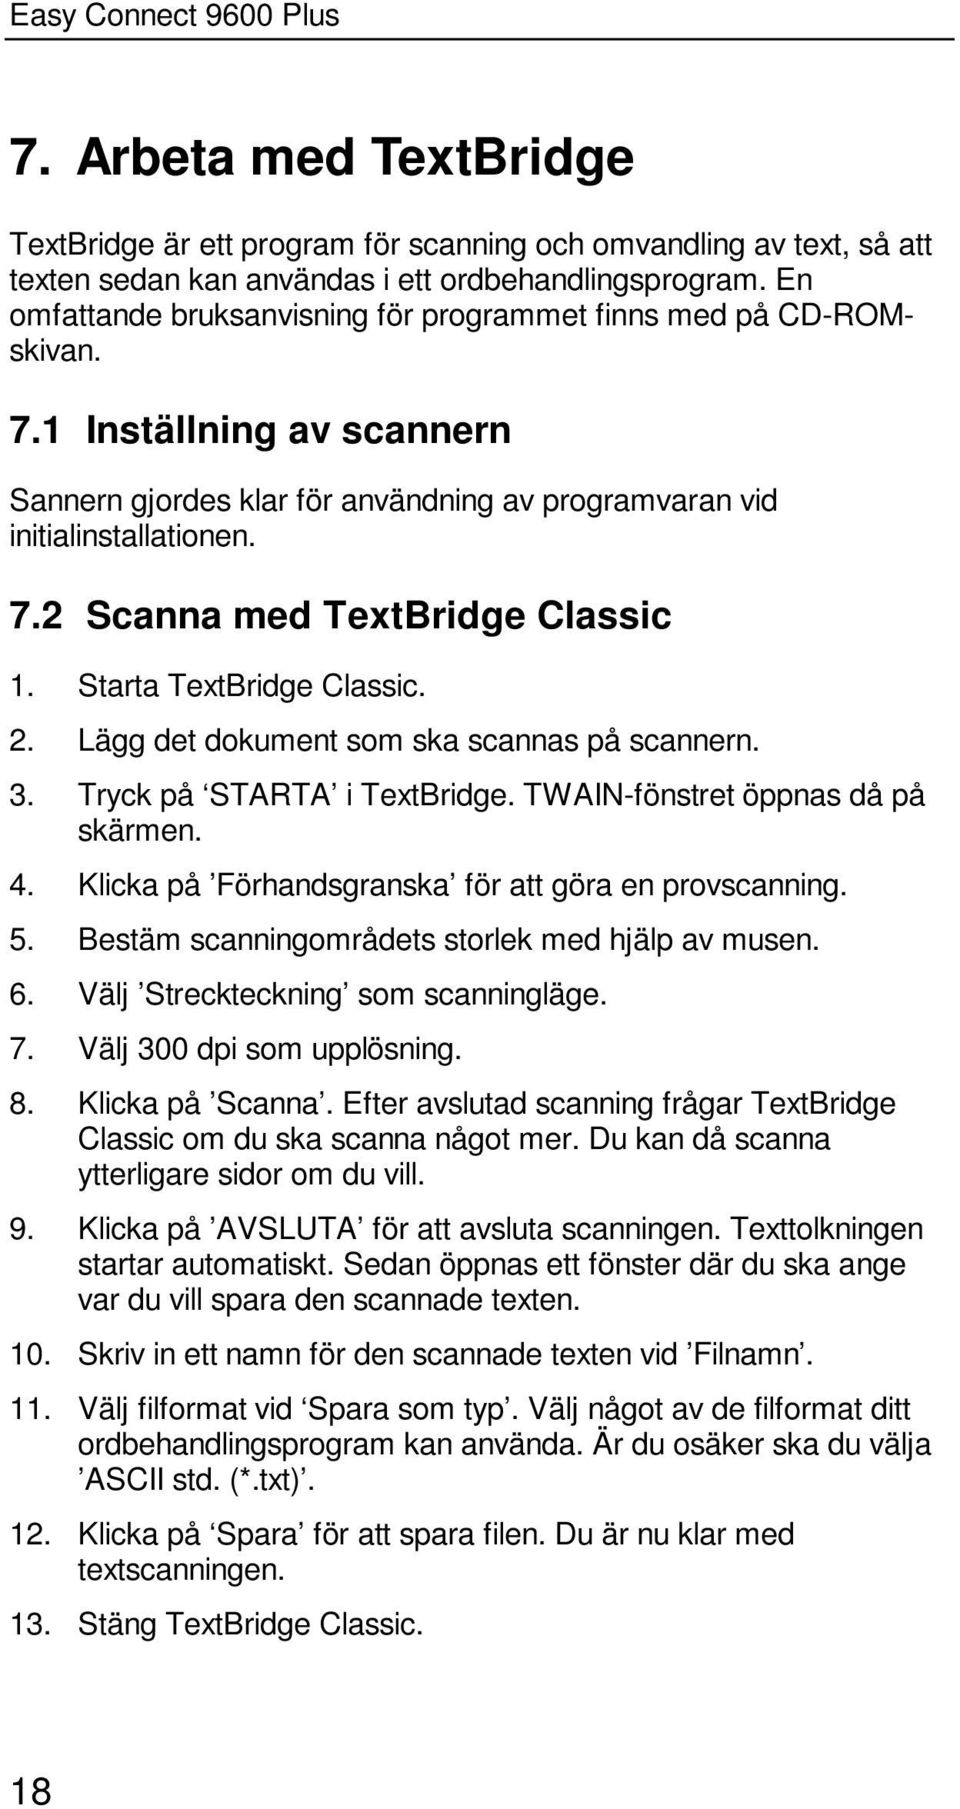 Starta TextBridge Classic. 2. Lägg det dokument som ska scannas på scannern. 3. Tryck på STARTA i TextBridge. TWAIN-fönstret öppnas då på skärmen. 4.